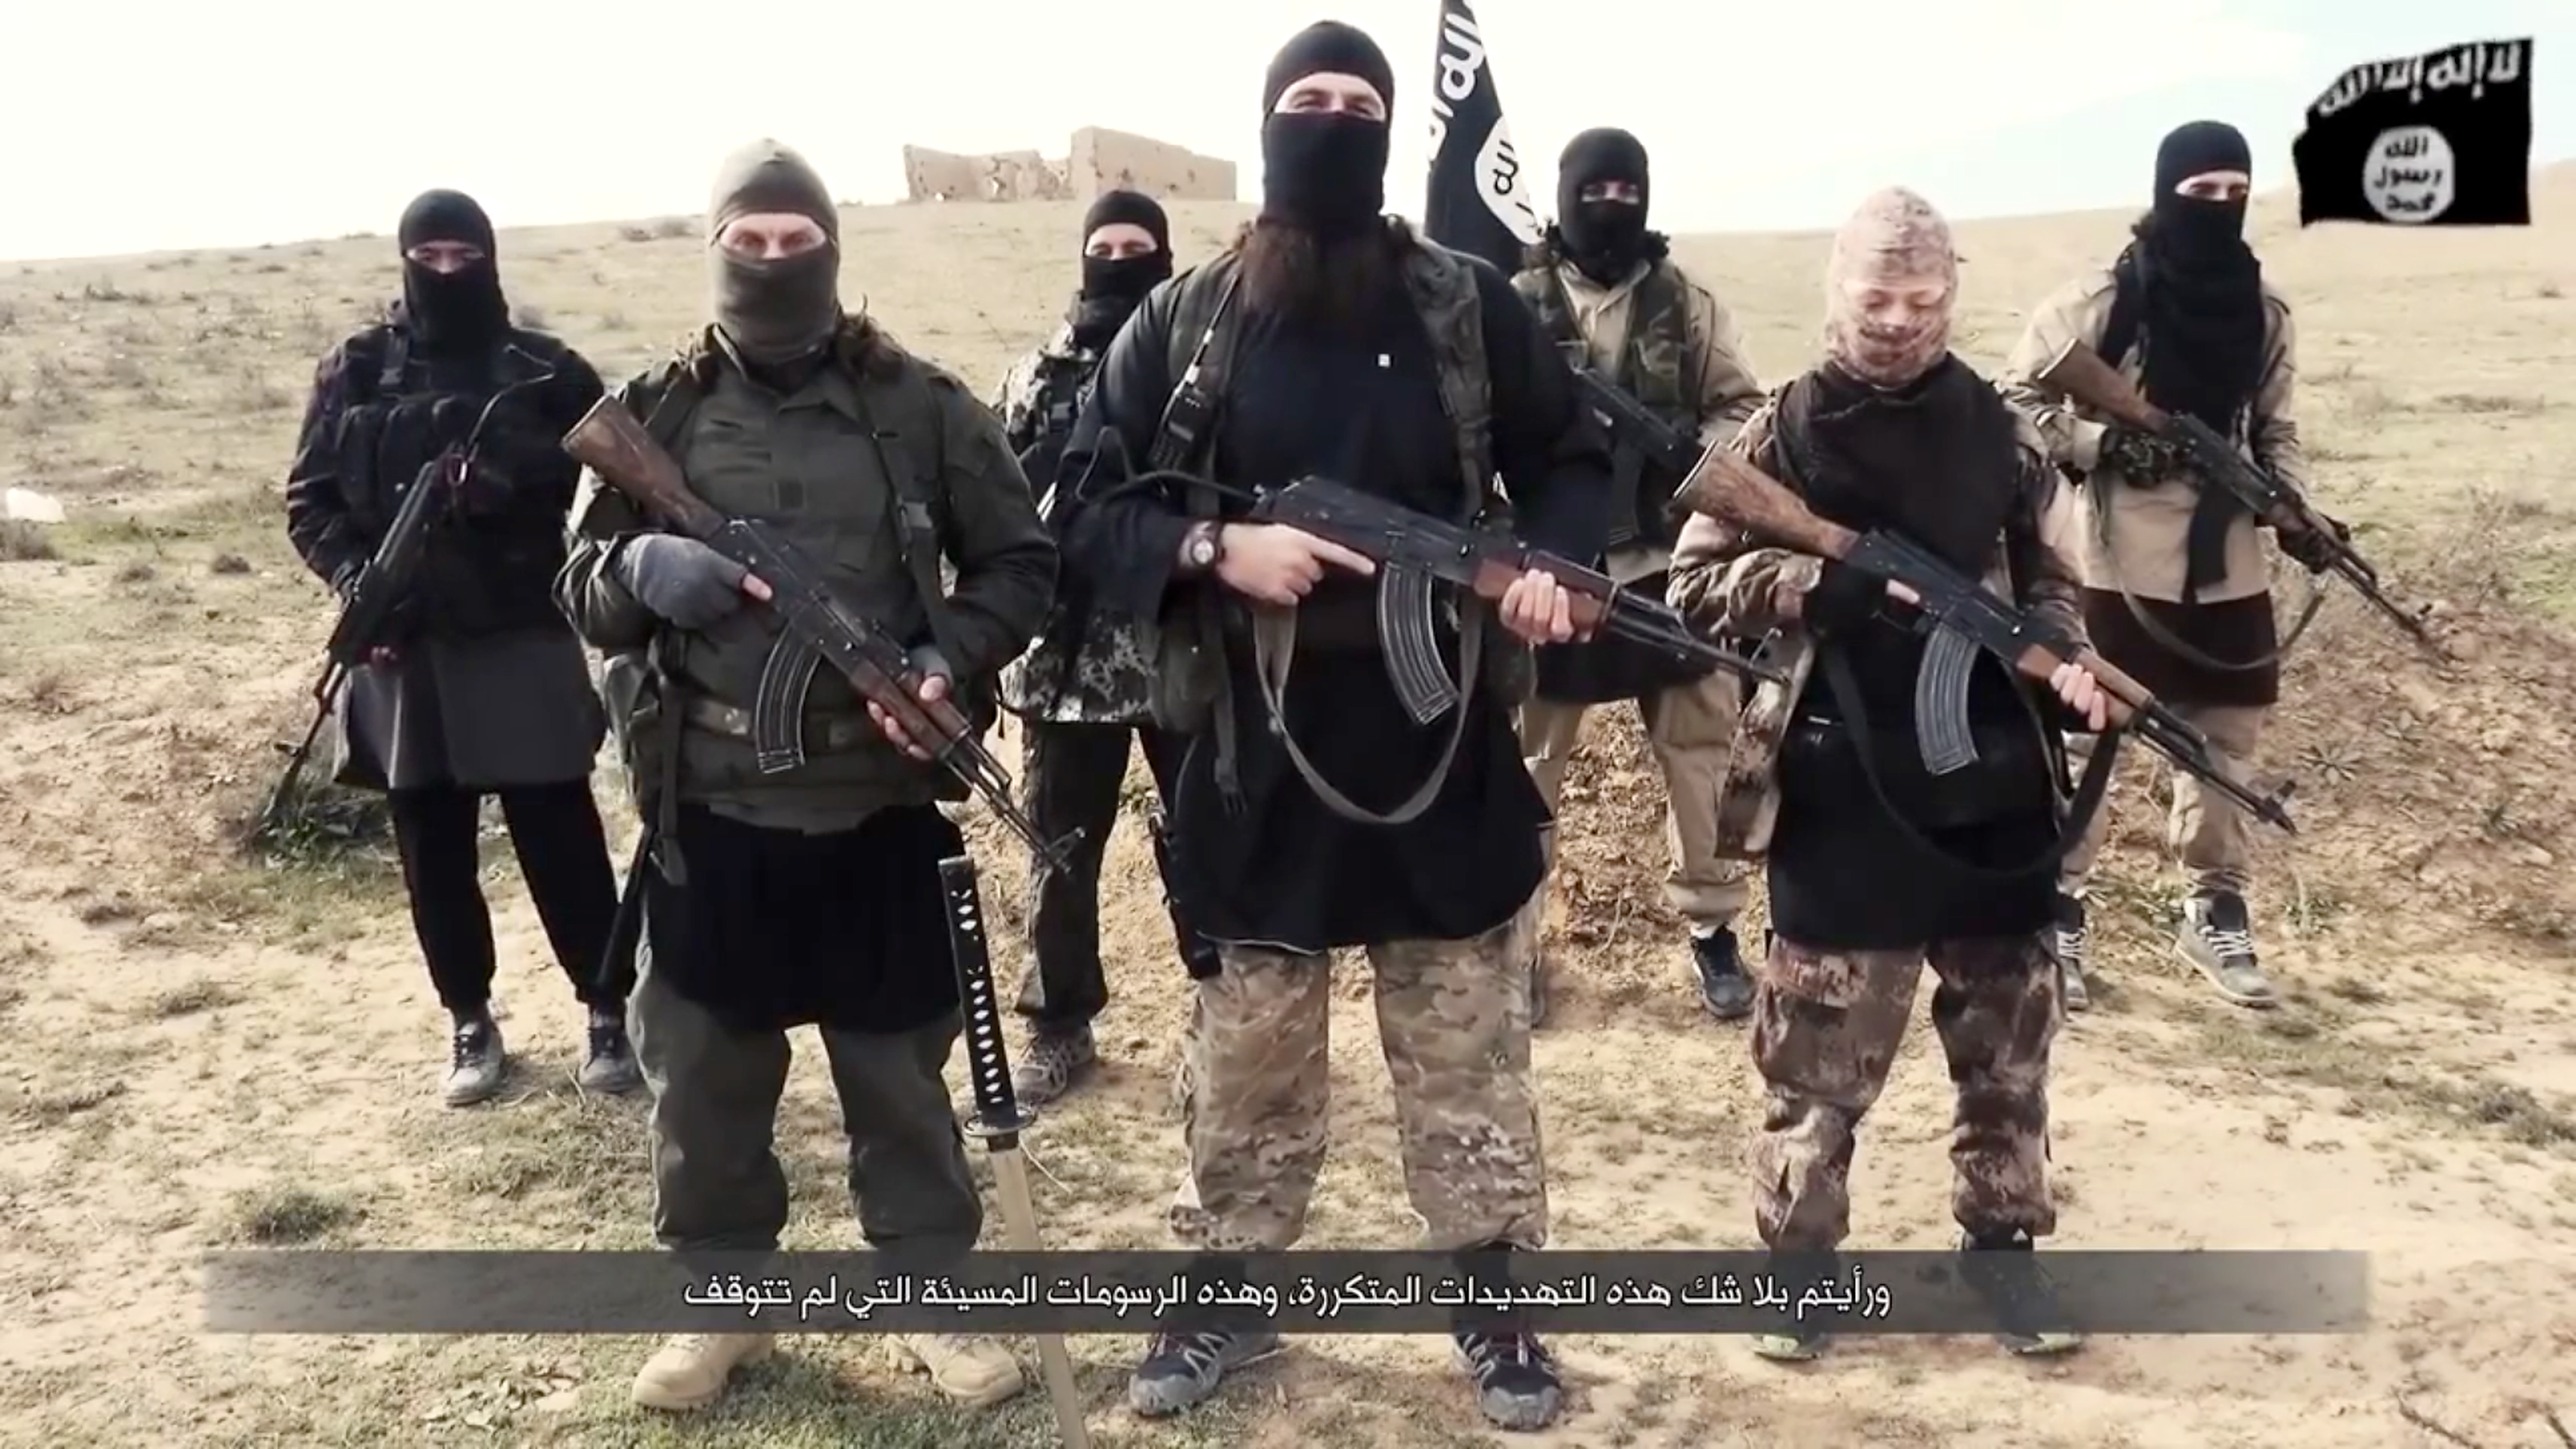 Видеообращение террористов. Боевики Исламского государства.